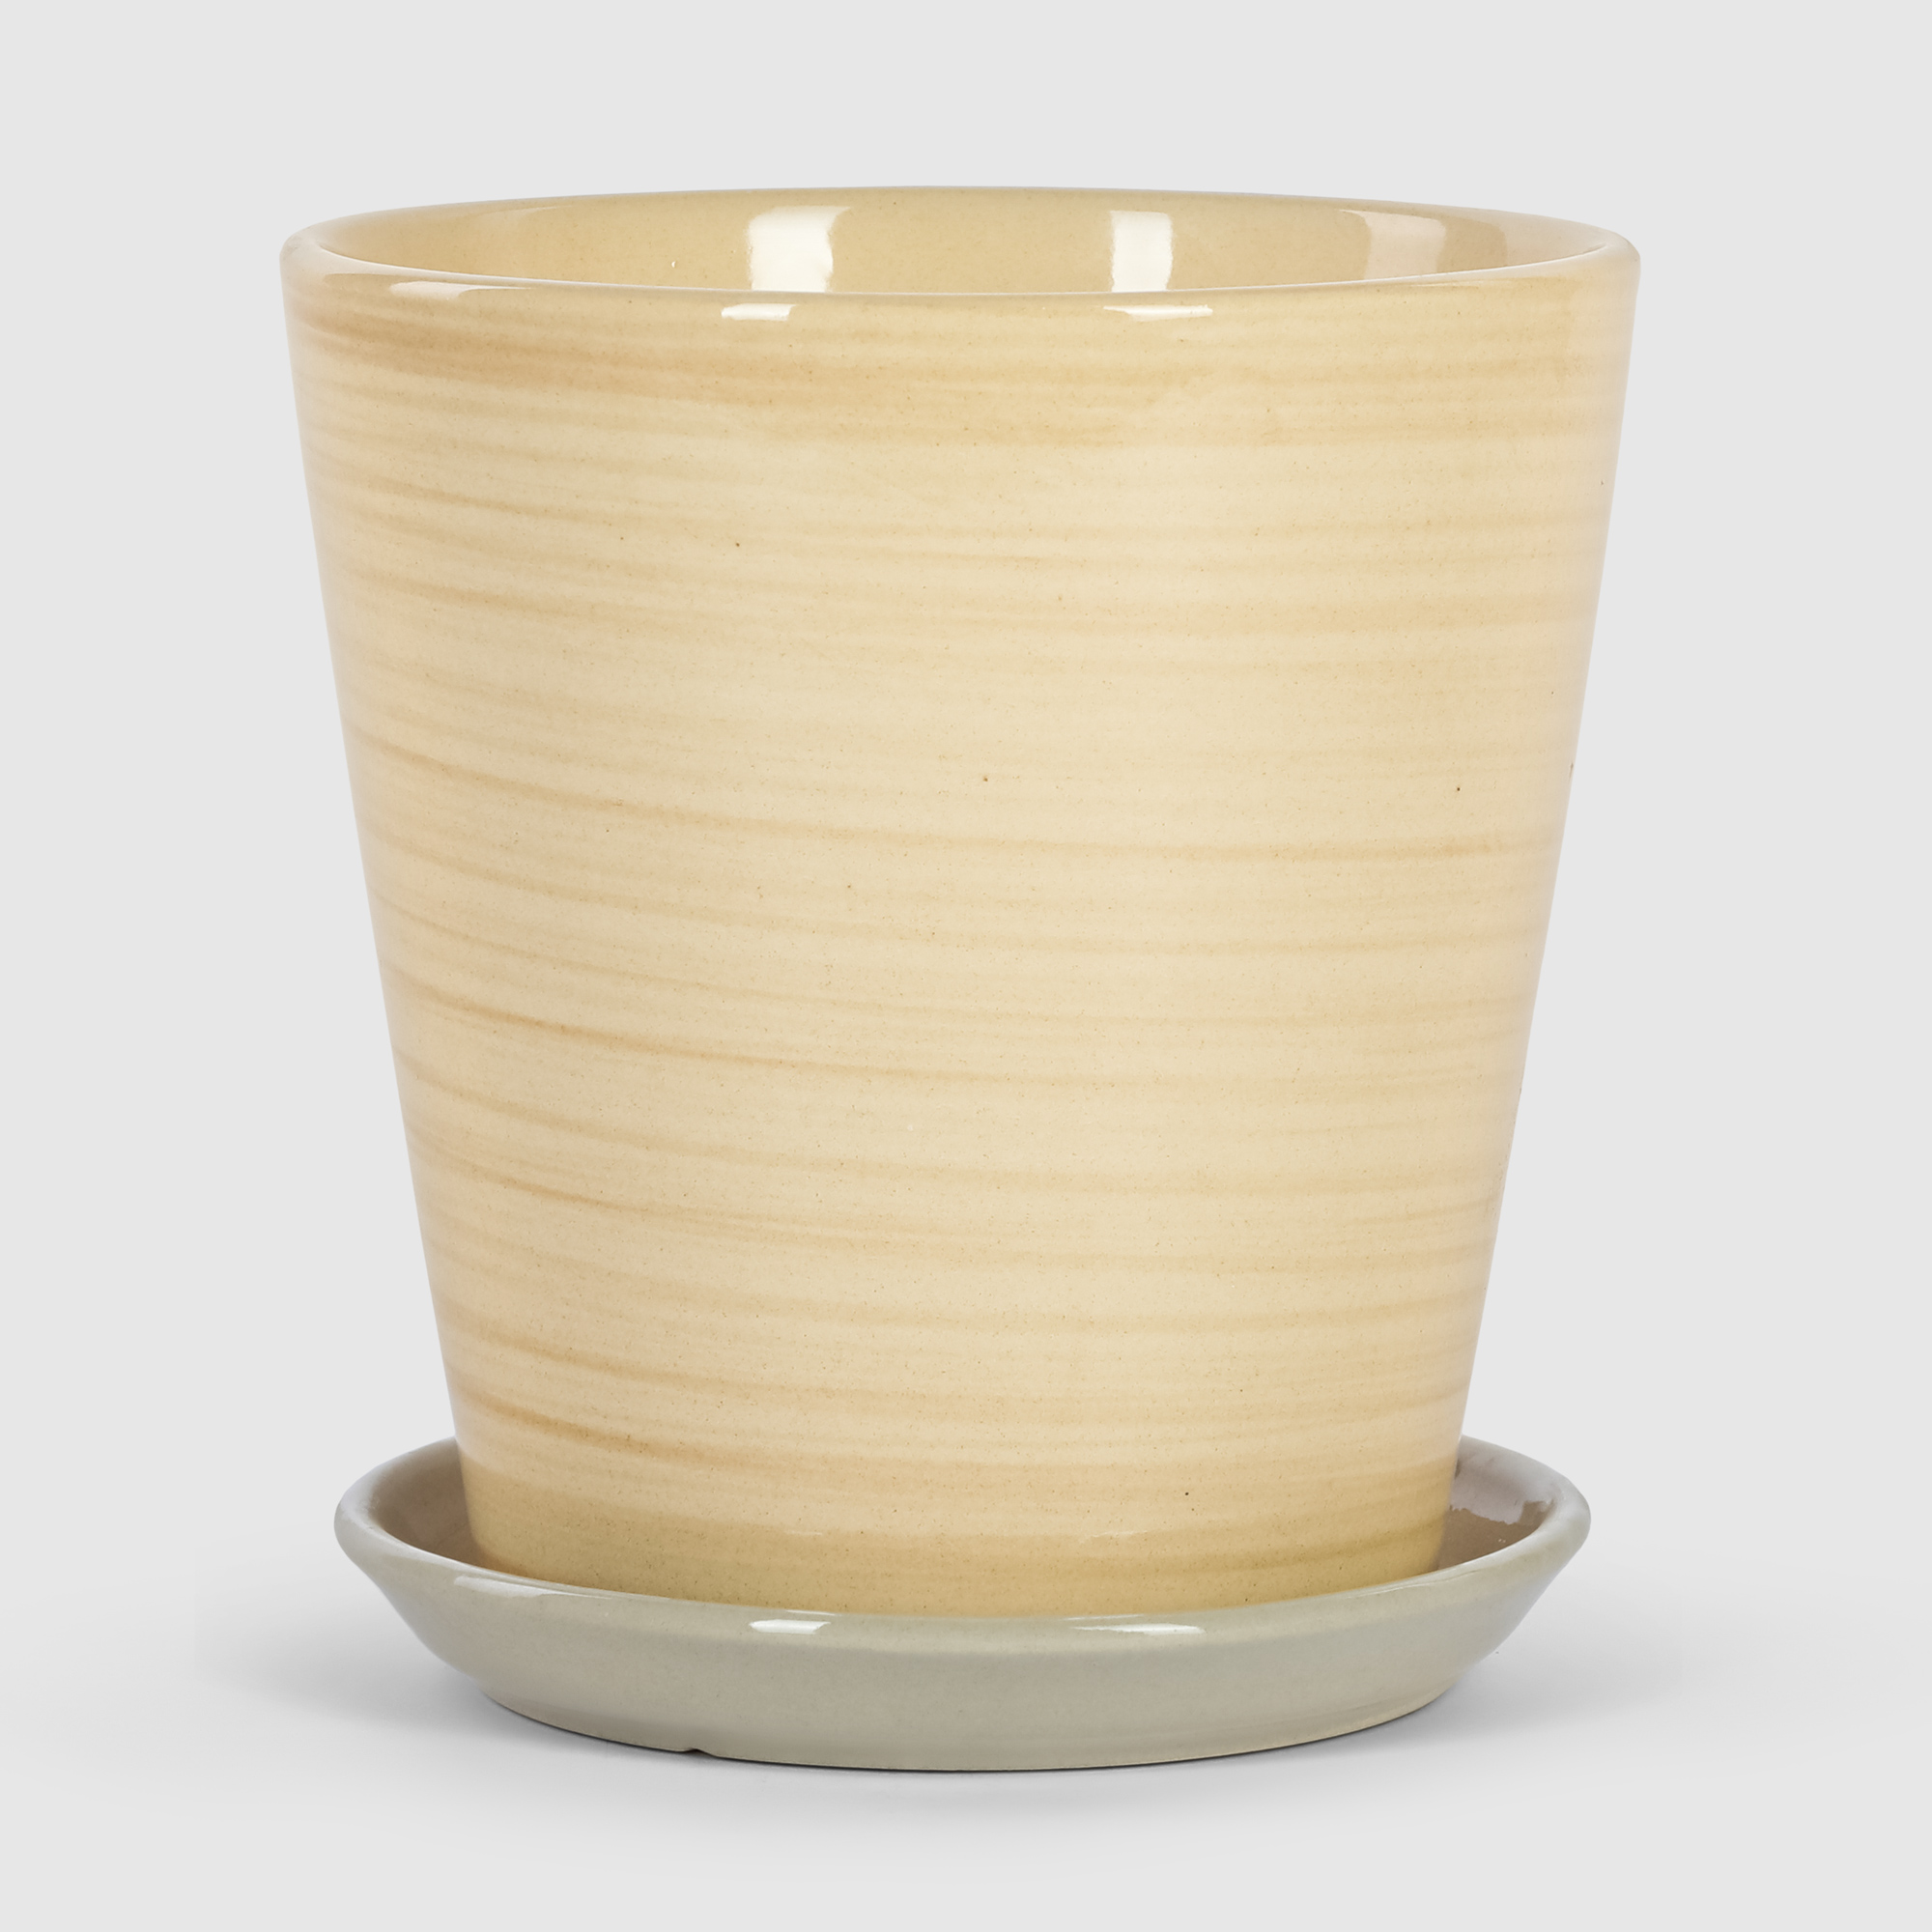 Кашпо керамическое для цветов Shine Pots 20x20см бежевое полосатое кашпо керамическое для ов shine pots 20x20см серое матовое